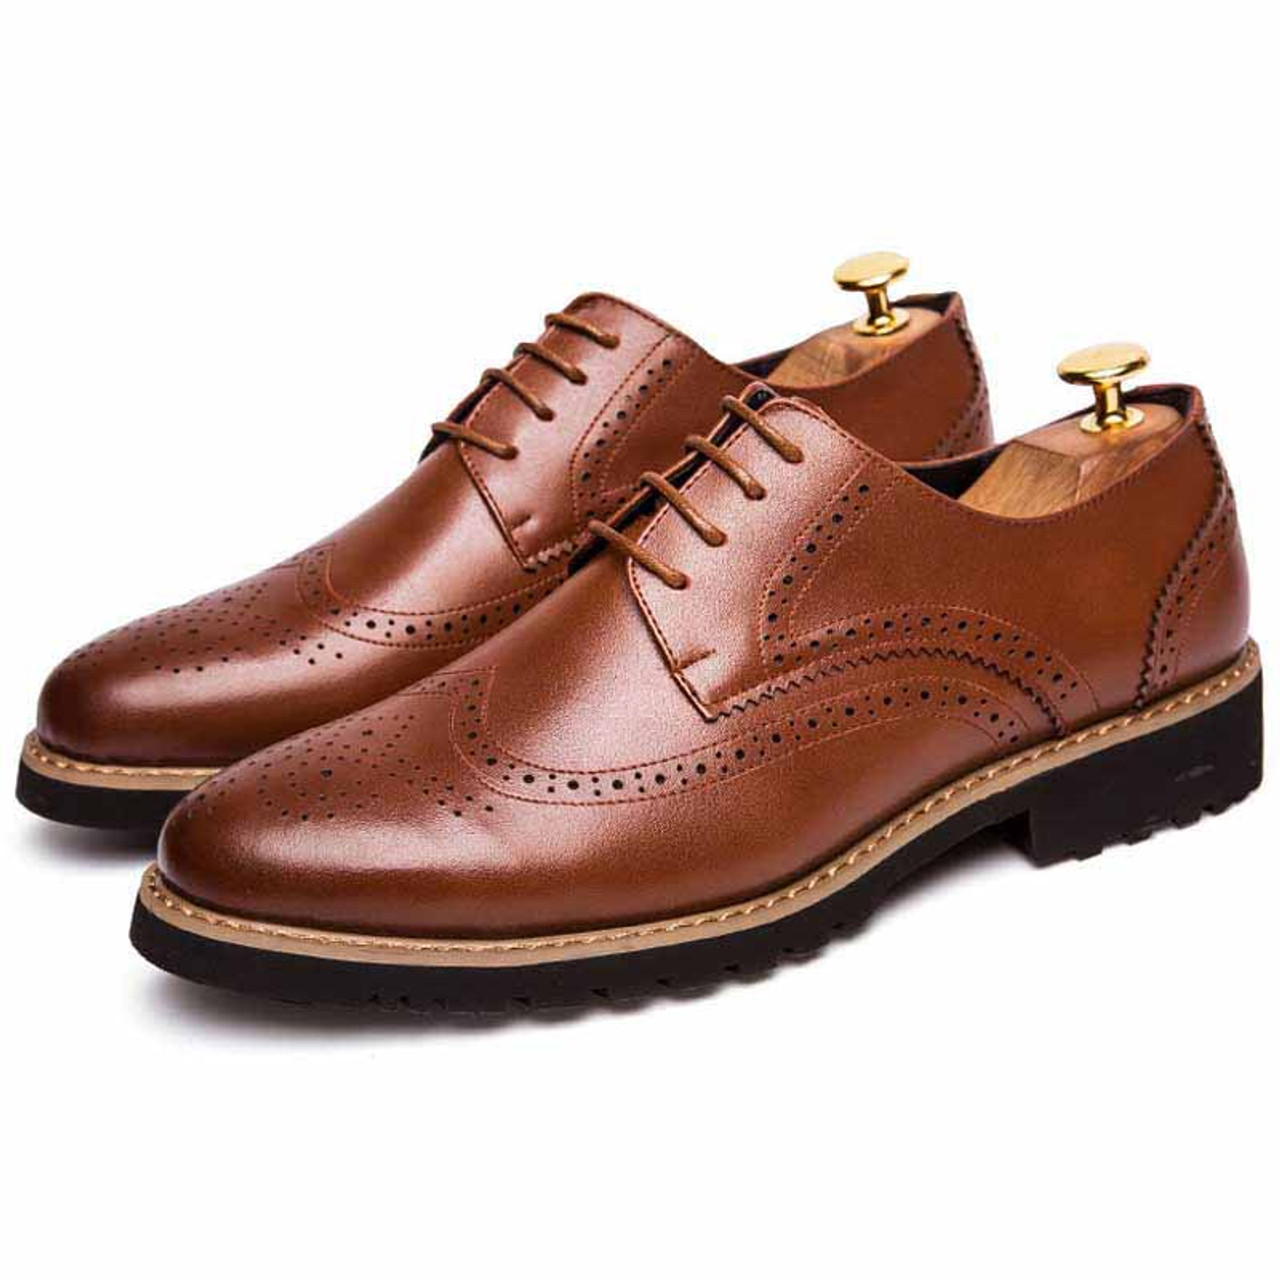 Brown retro brogue lace up derby dress shoe | Mens dress shoes online ...